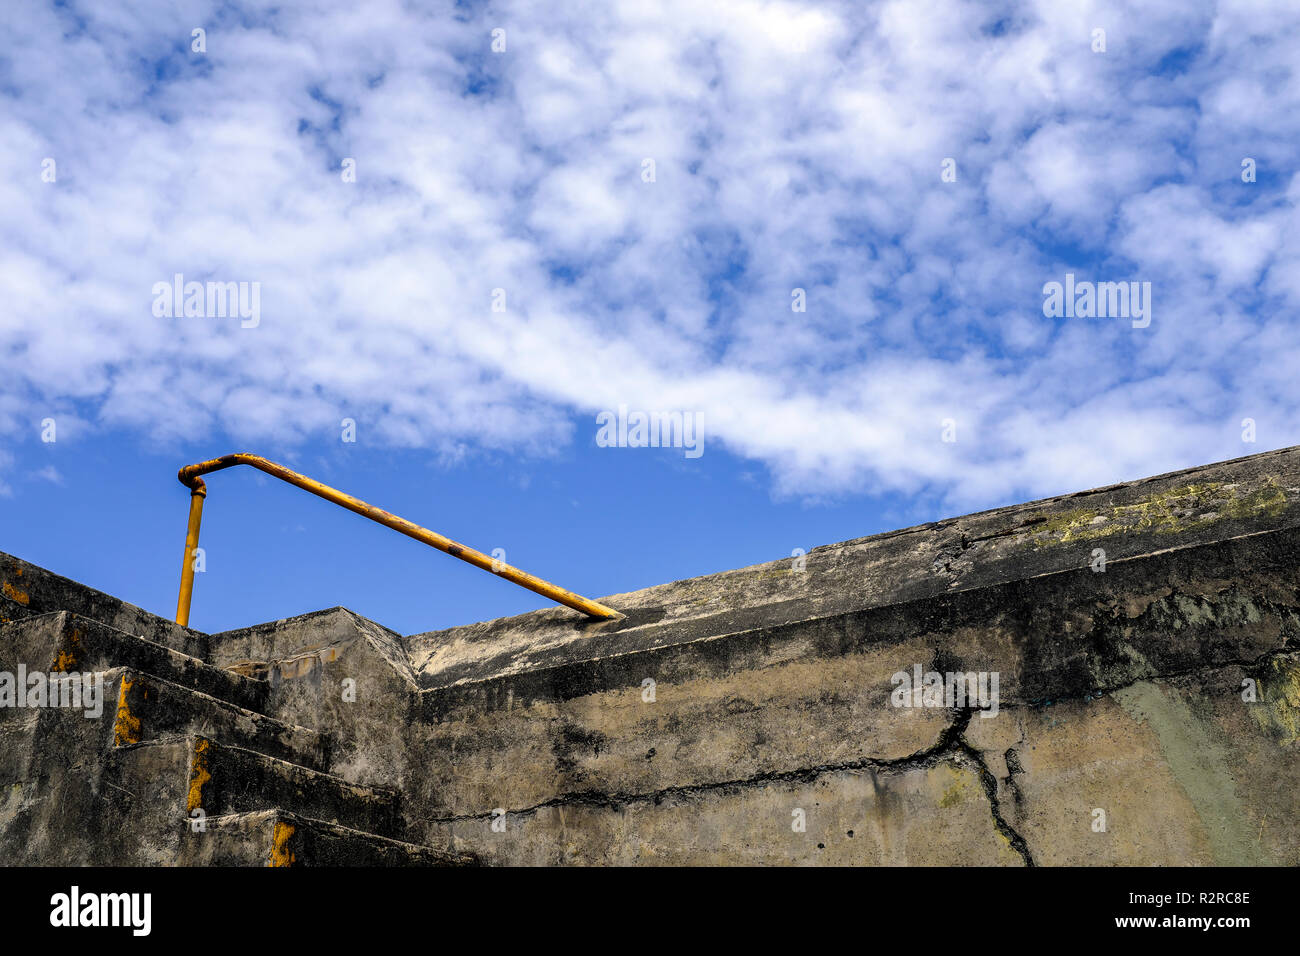 WA 14657-00 ... WASHINGTON - Treppen, Geländer, Himmel und Wolken am Fort Warden State Park in Port Townsend. Stockfoto